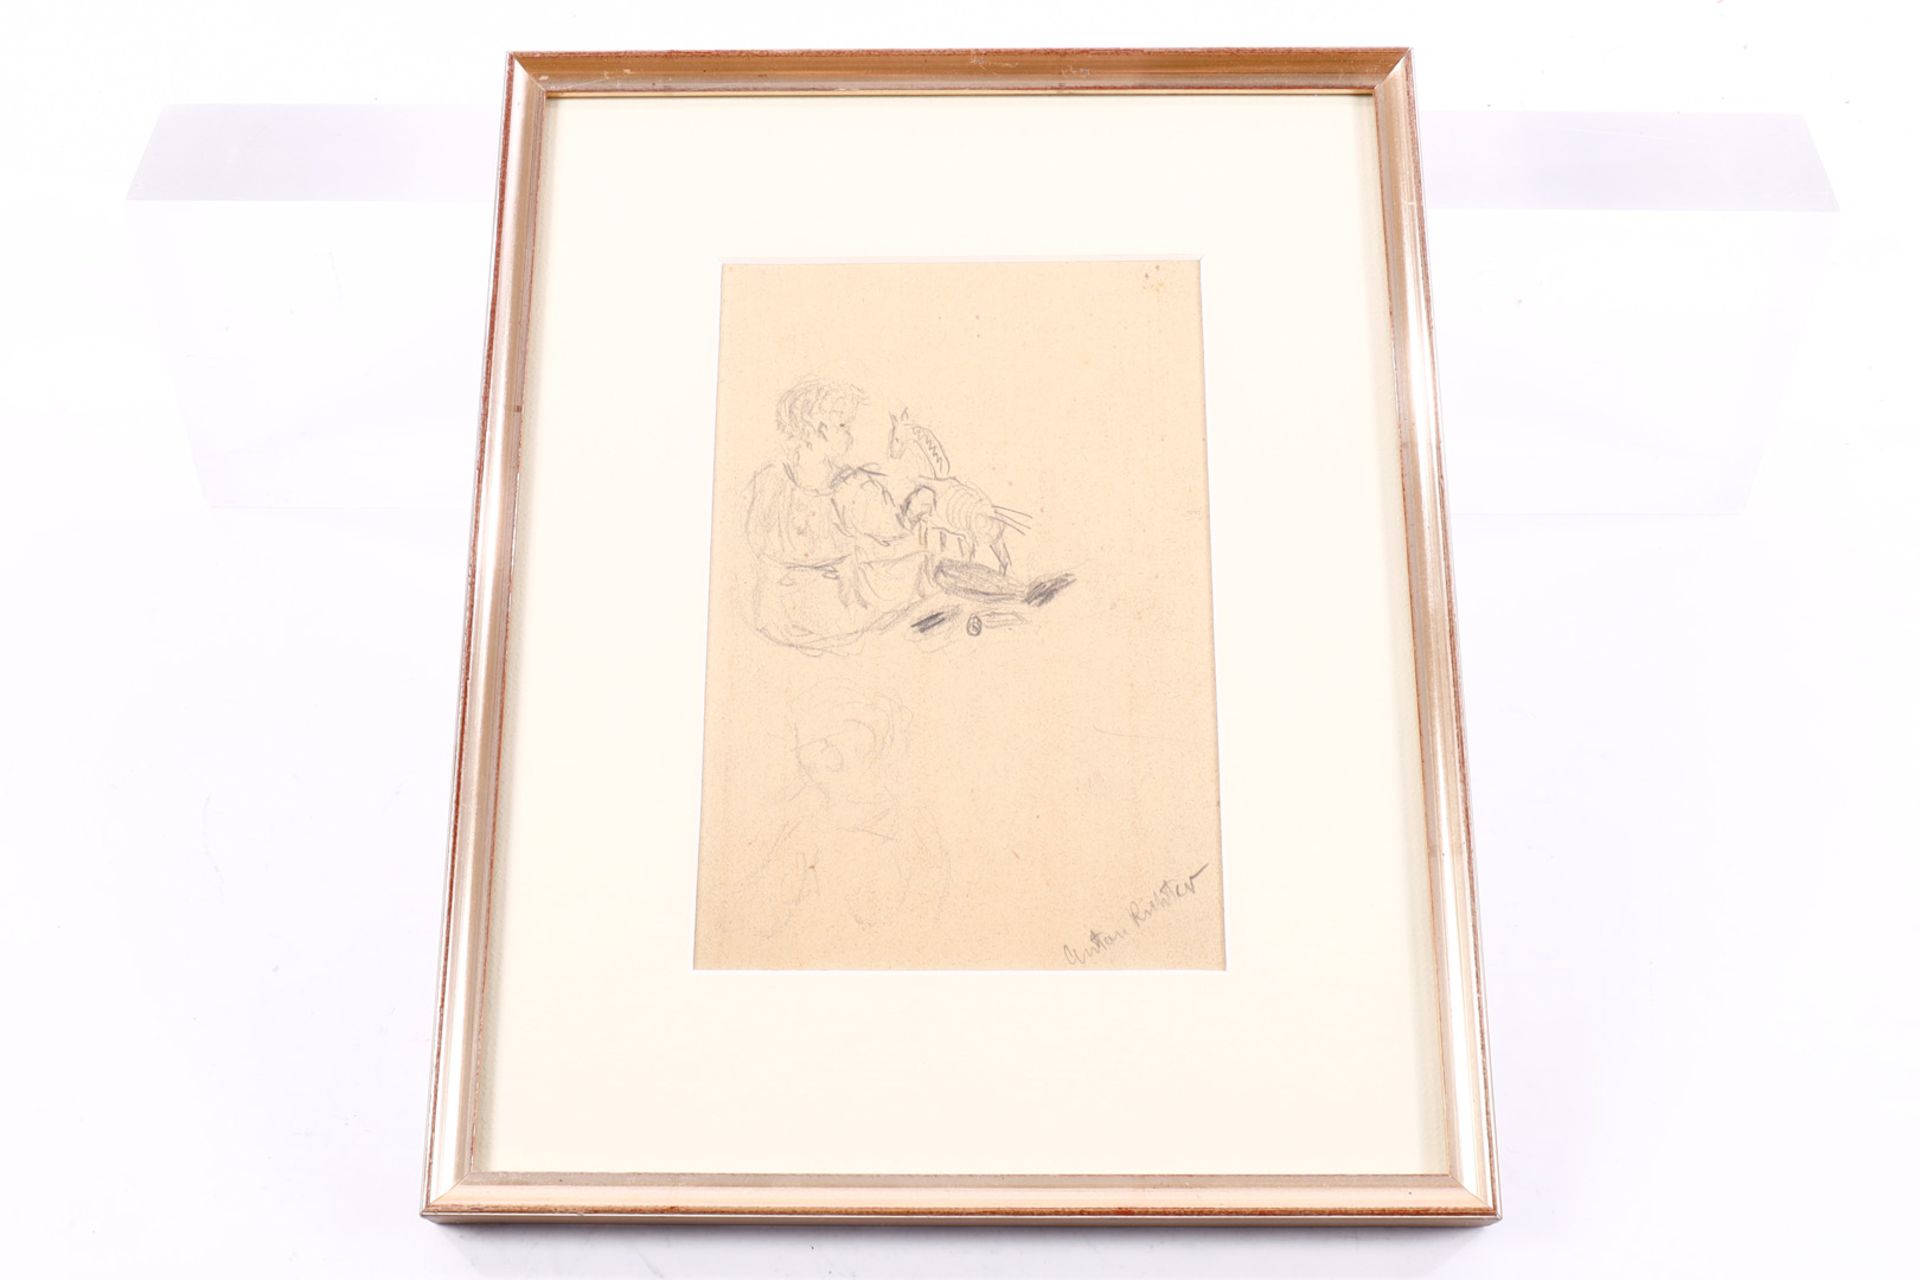 Anton Richter (1900-1962), Spielendes Kind, Bleistiftskizze, signiert, gerahmt, Gesamtmaße 26 x 21